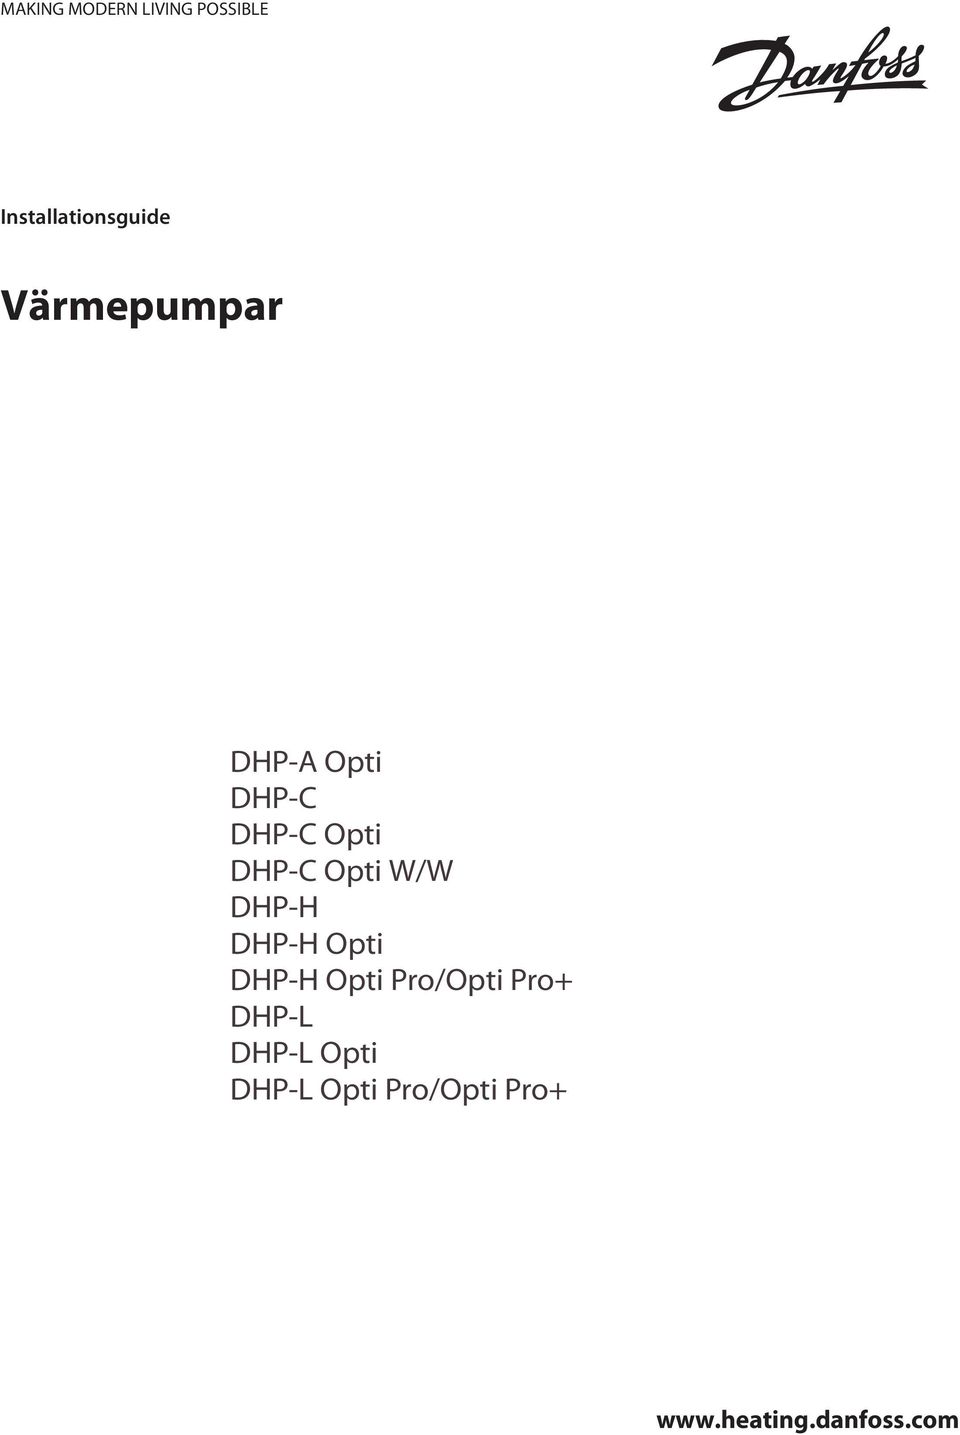 DHP-H Opti DHP-H Opti Pro/Opti Pro+ DHP-L DHP-L